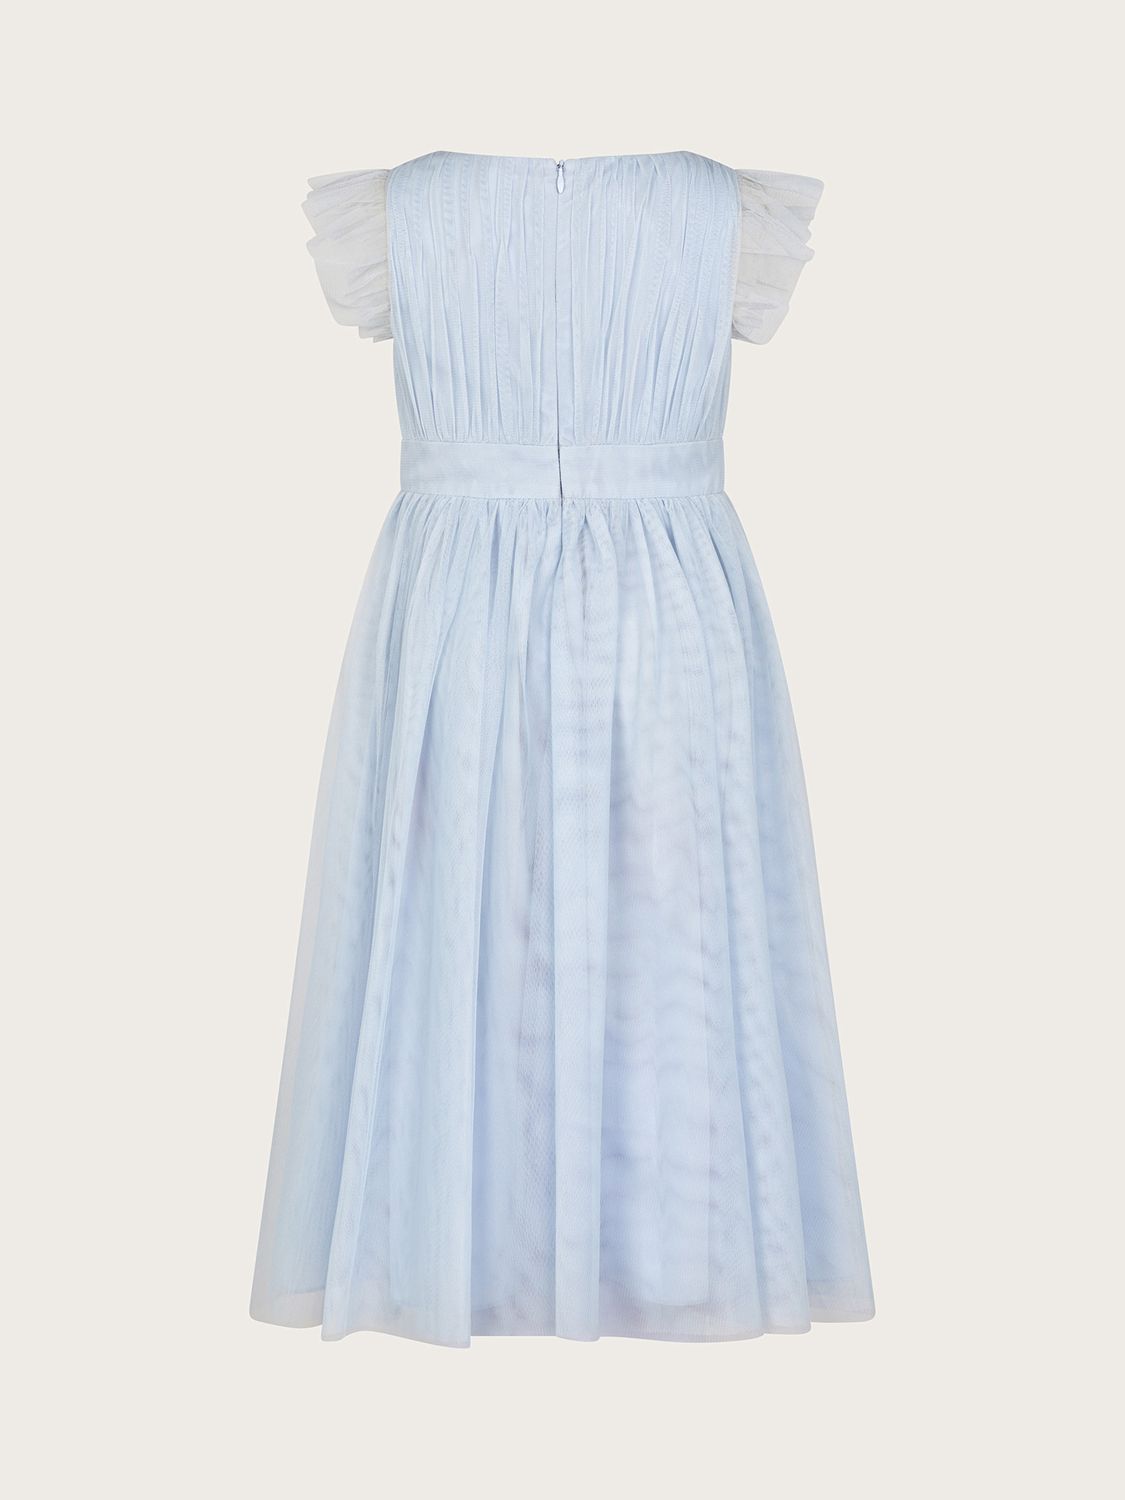 Buy Monsoon Kids' Penelope Belted Dress Online at johnlewis.com